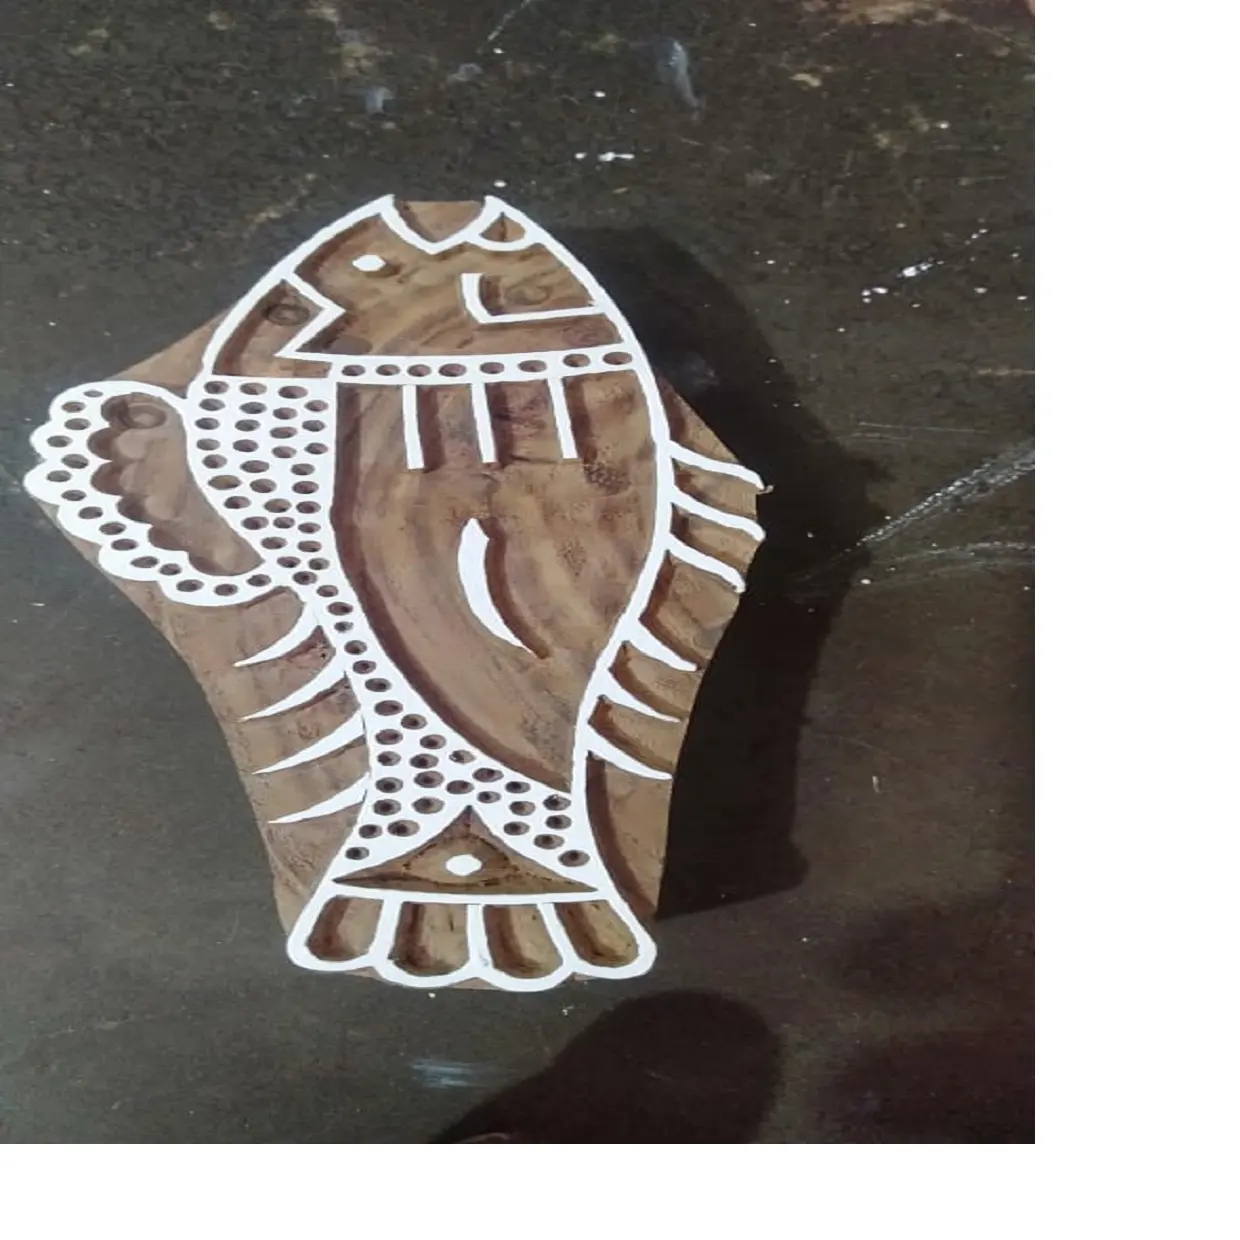 장인이 섬유 인쇄용으로 잘 만들어진 수생 물고기 모양으로 만든 맞춤형 목재 섬유 인쇄 블록